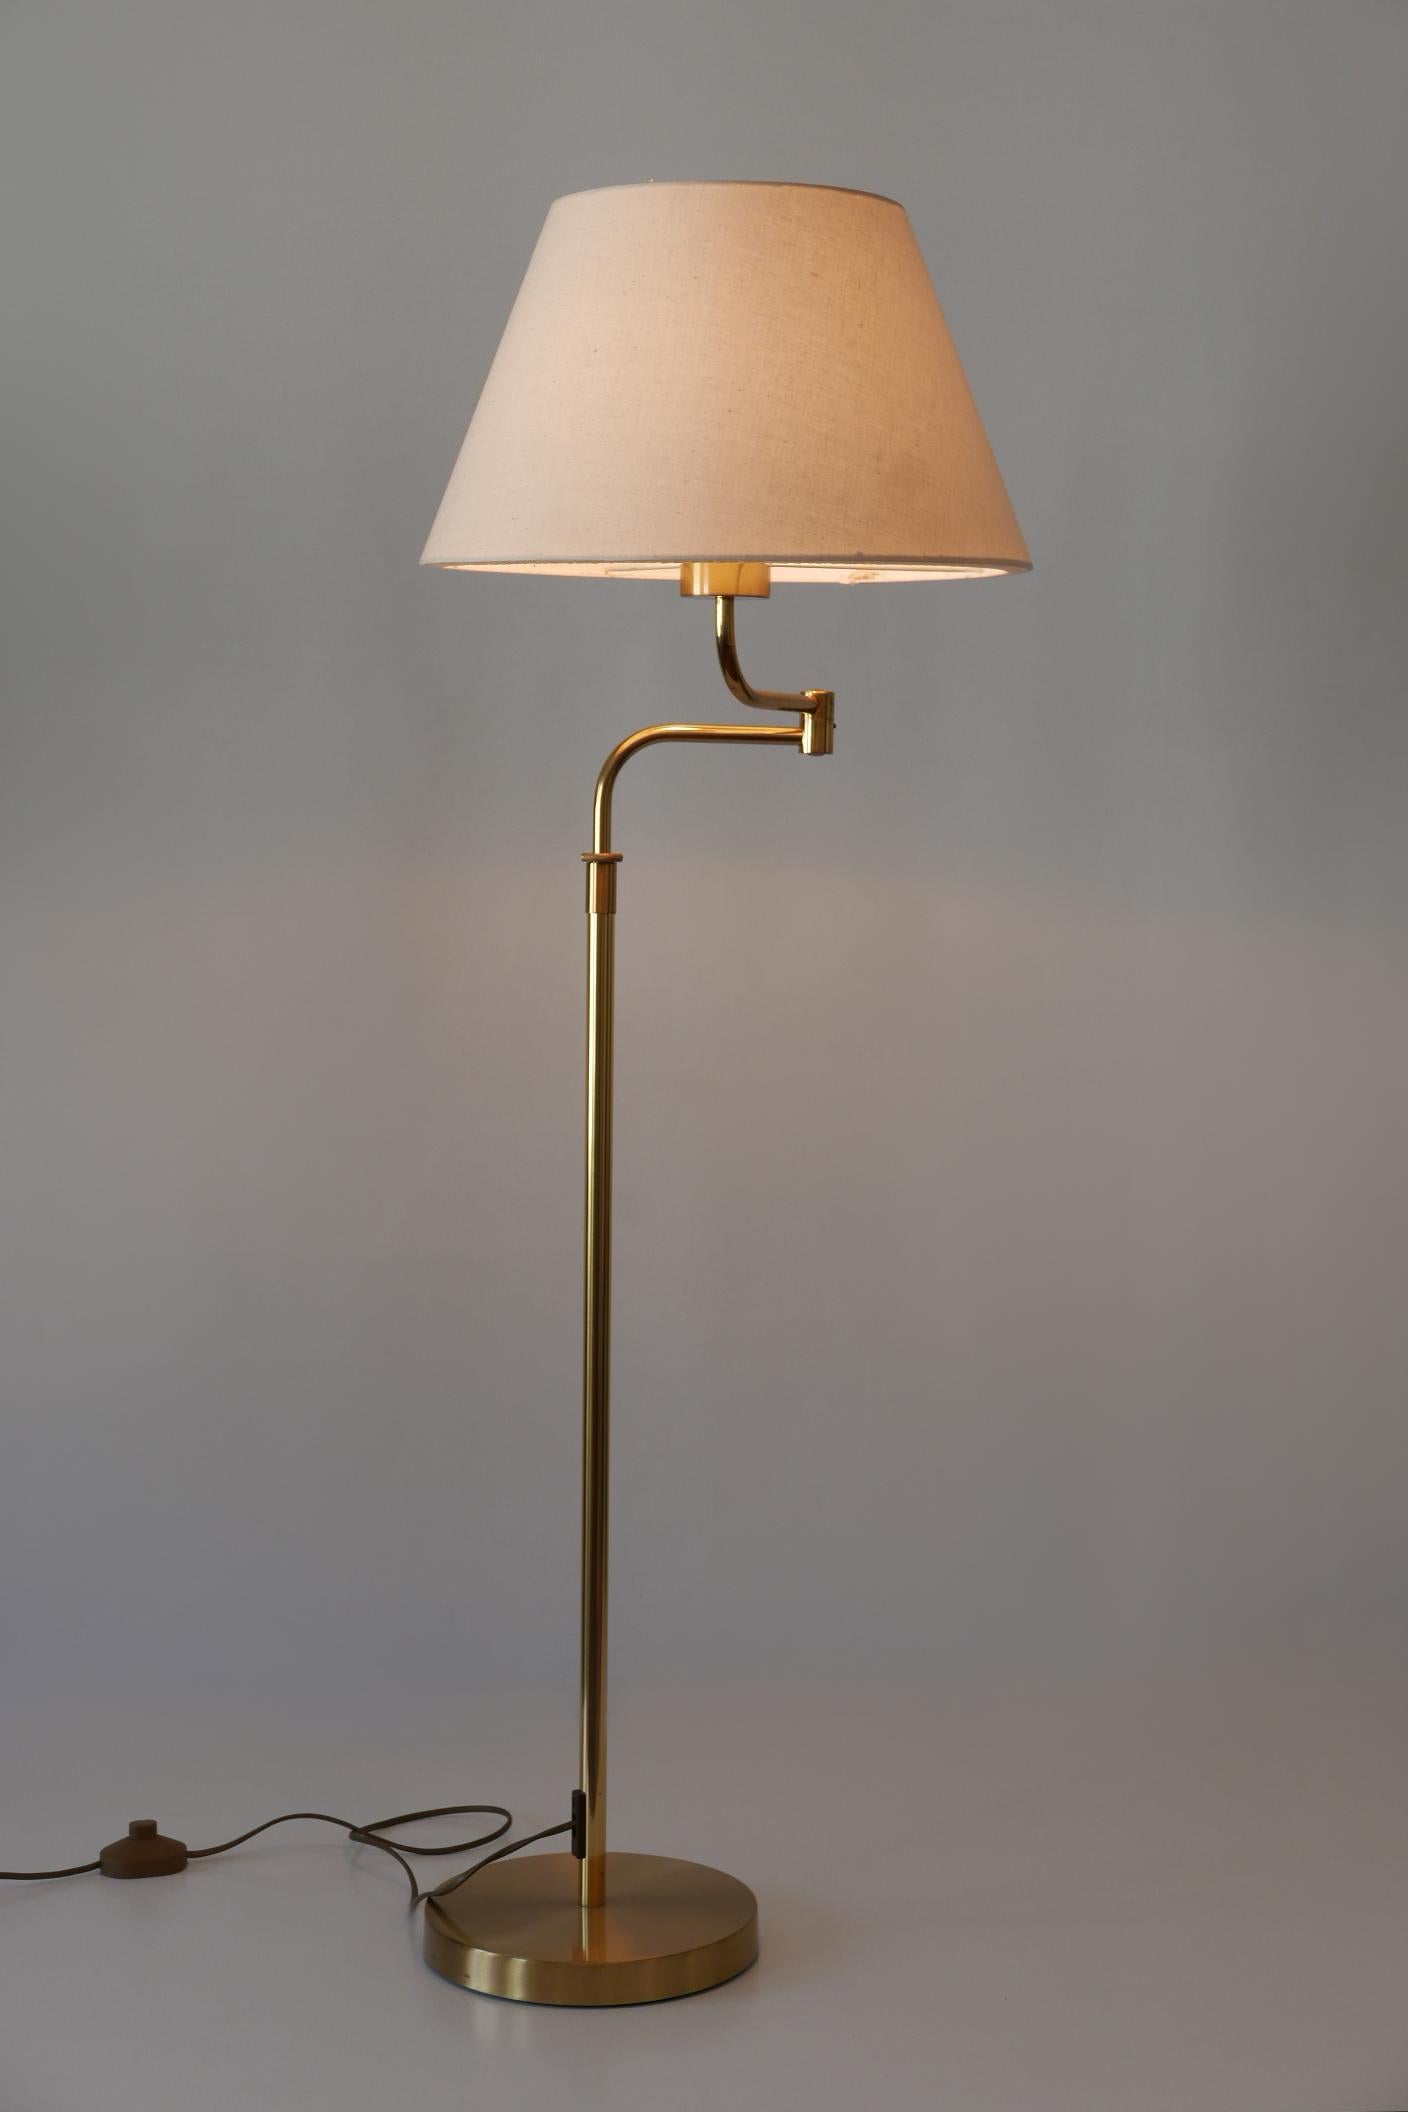 Adjustable Vintage Floor Lamp or Reading Light by Sölken Leuchten Germany 1980s For Sale 1